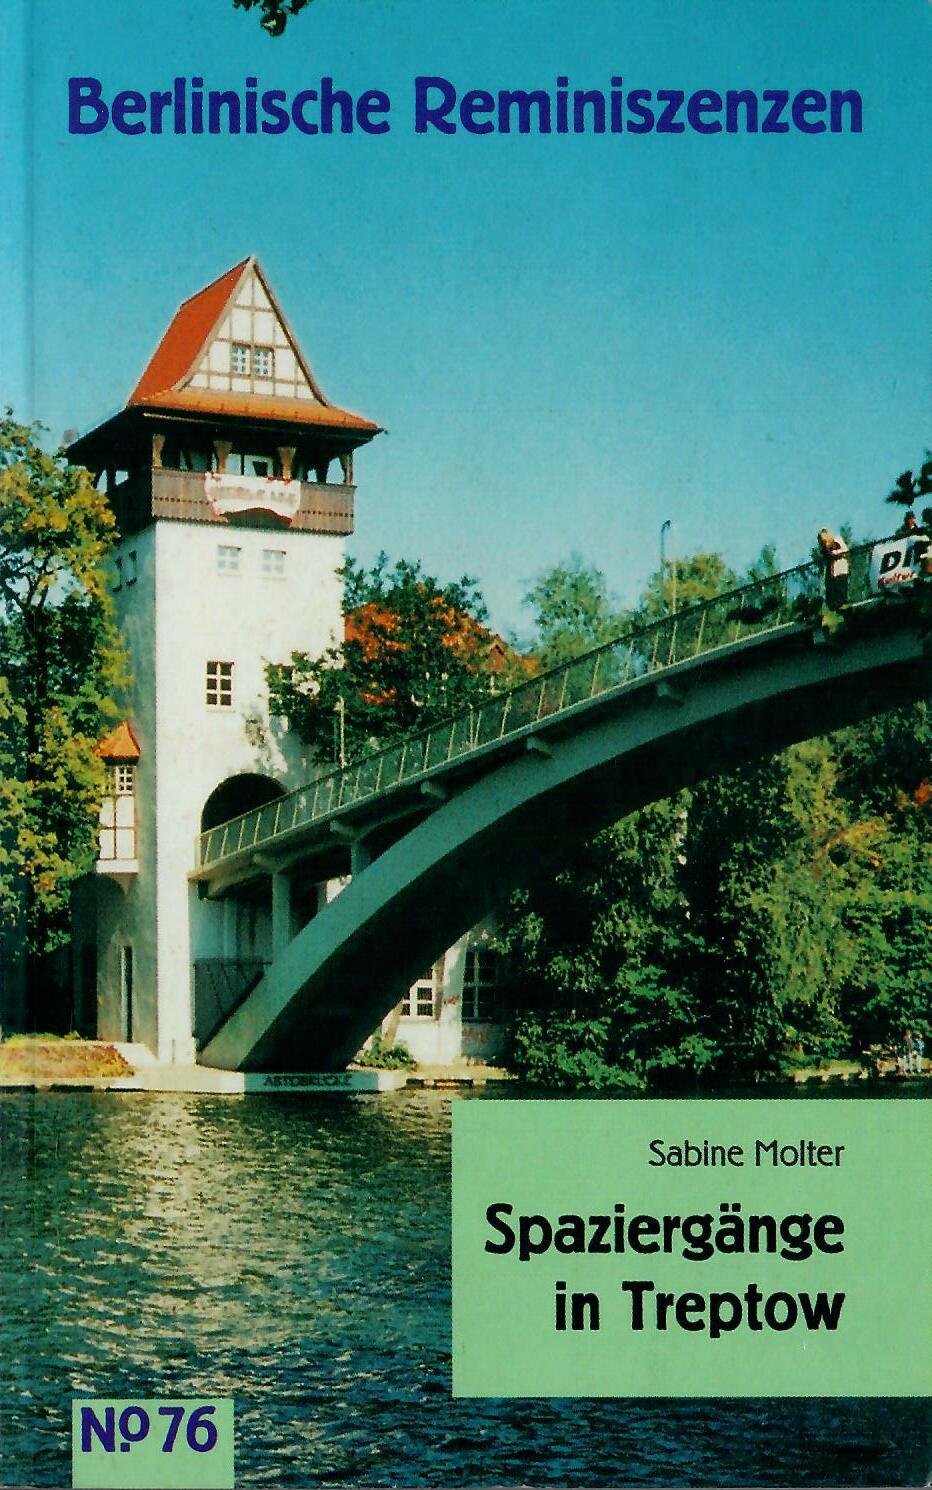 Spaziergänge in Treptow; Mit zahlreichen Abbildungen - Berlinische Reminiszenzen Nr. 76 - Molter,Sabine